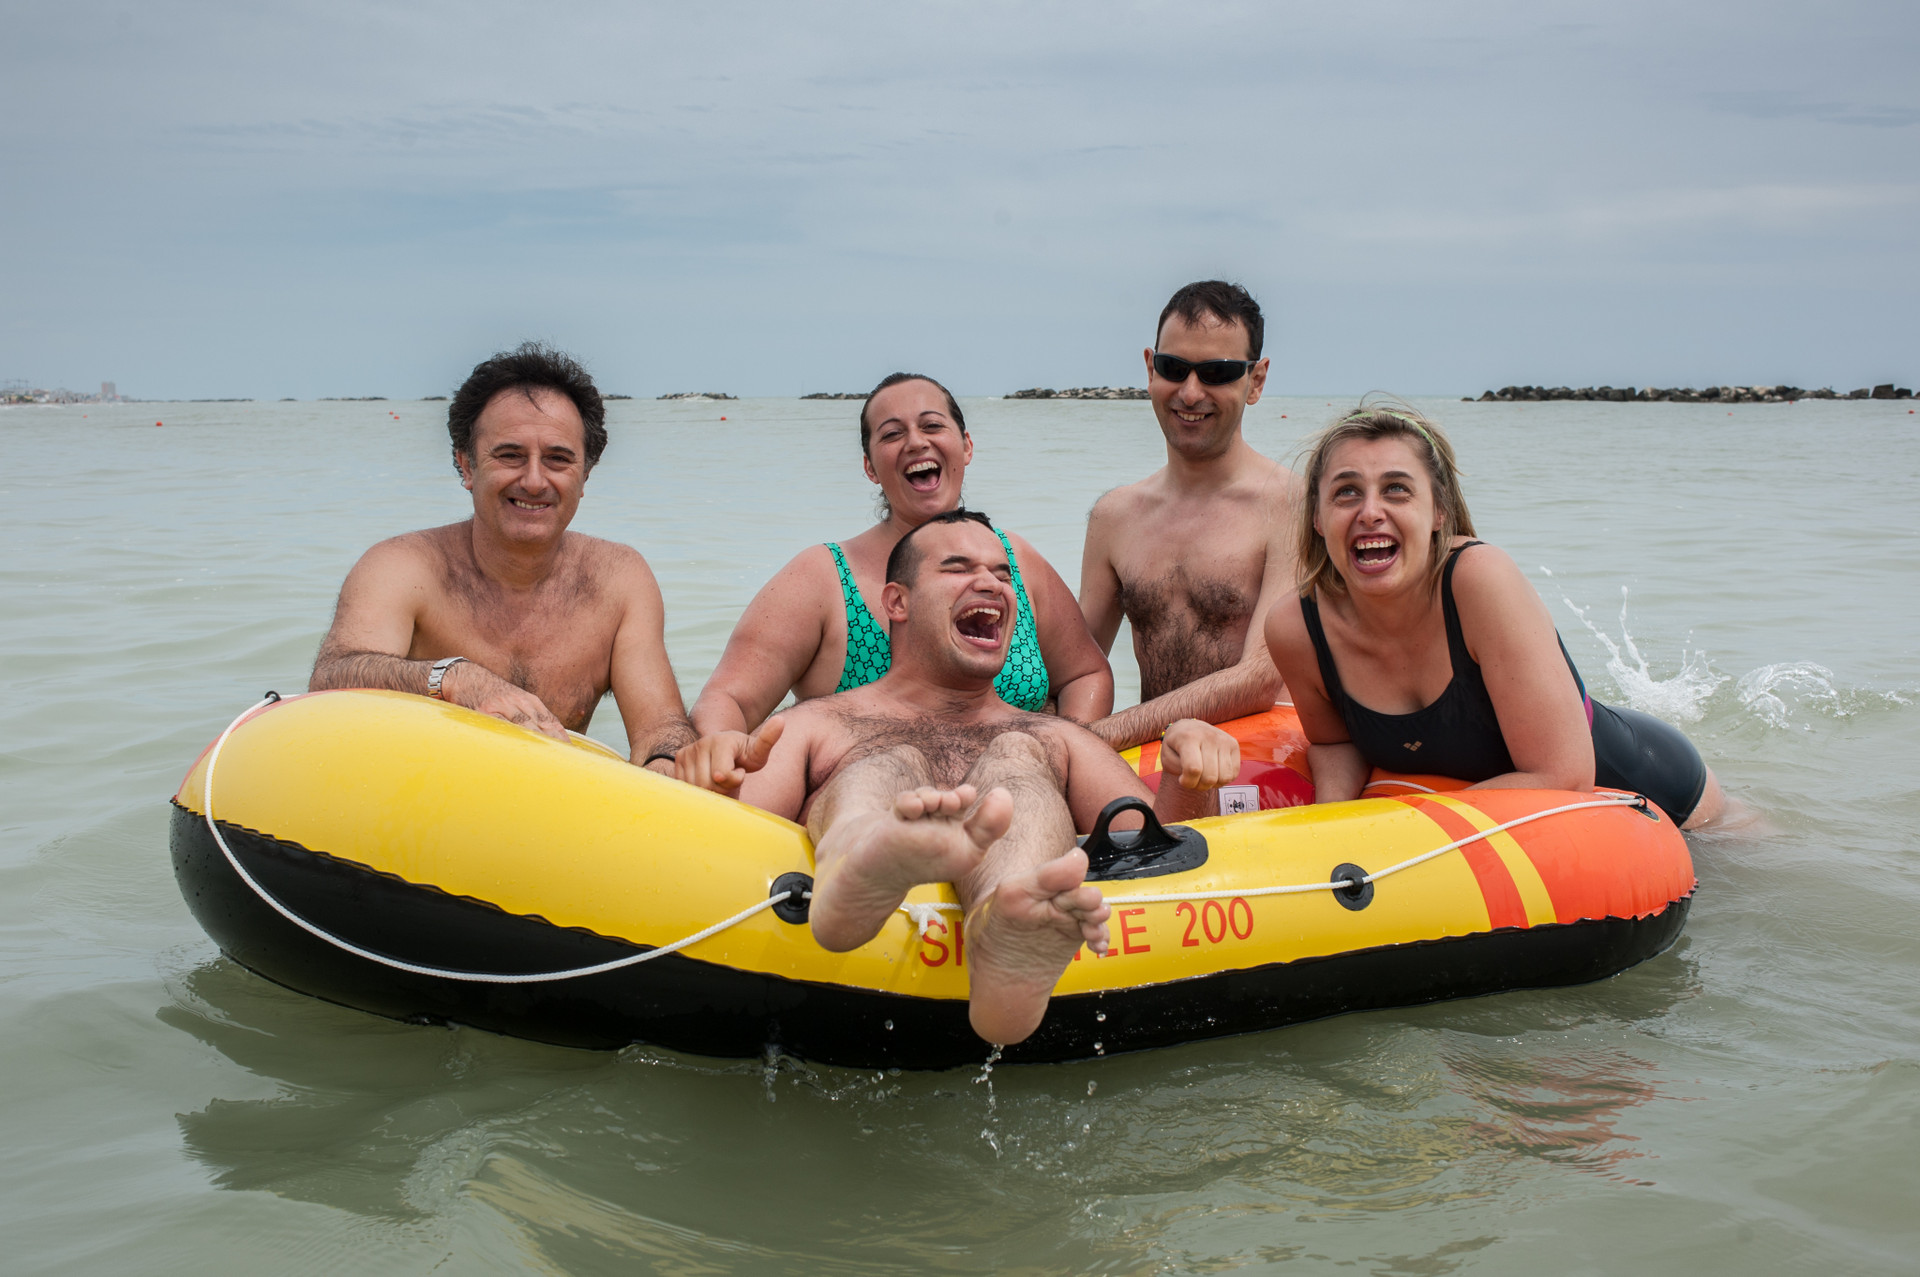 Soggiotni estivi al mare: un utente ride di gusto galleggiando su un gommone mentre volontari ed altri utenti, appoggiati intorno al gommone, ridono insieme a lui